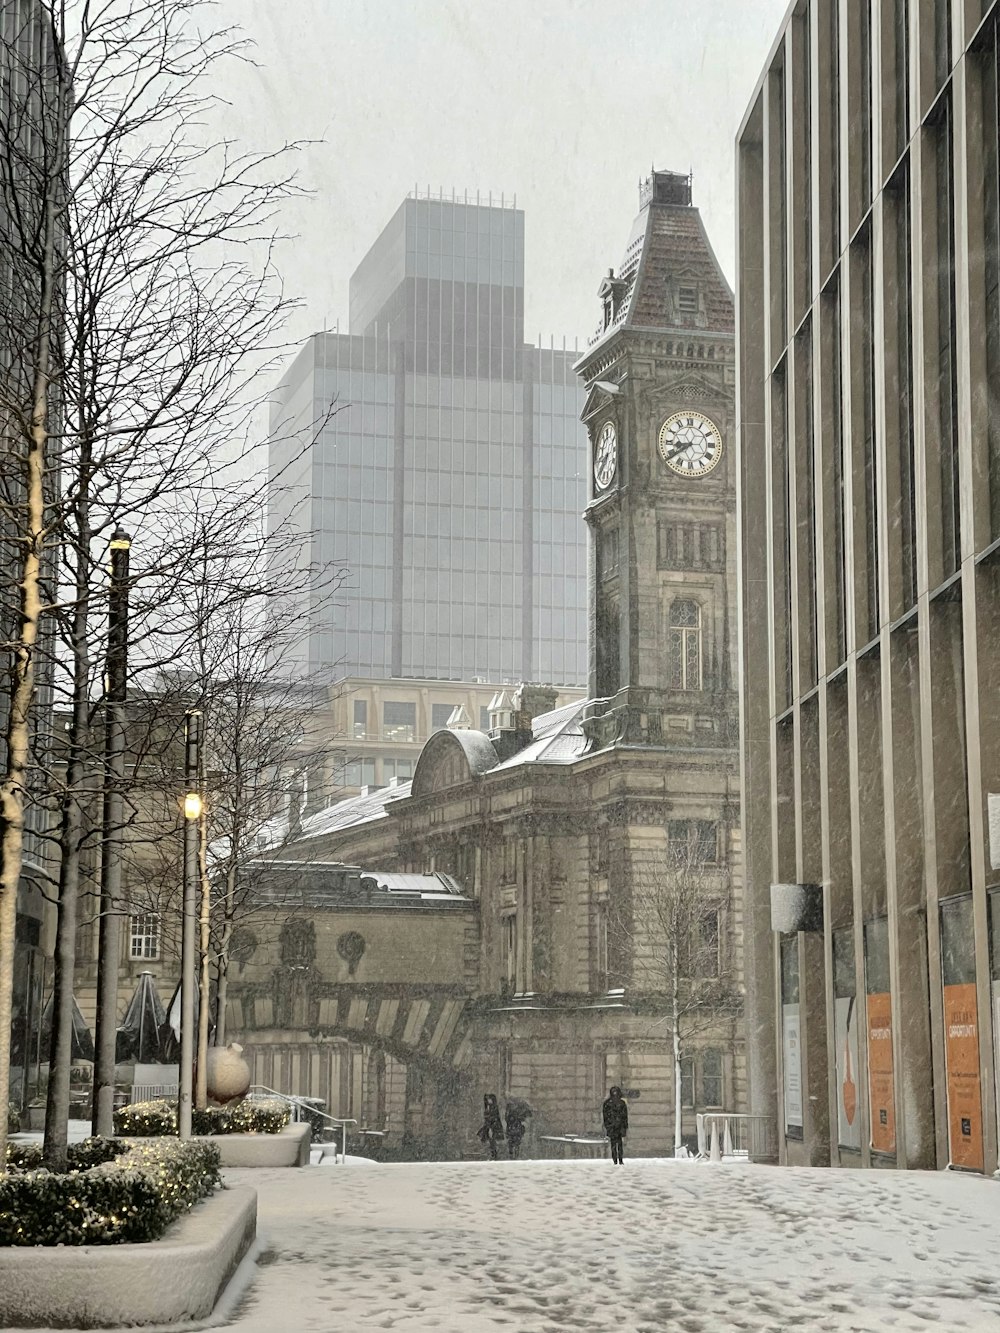 Ein Uhrturm mitten in einer verschneiten Stadt